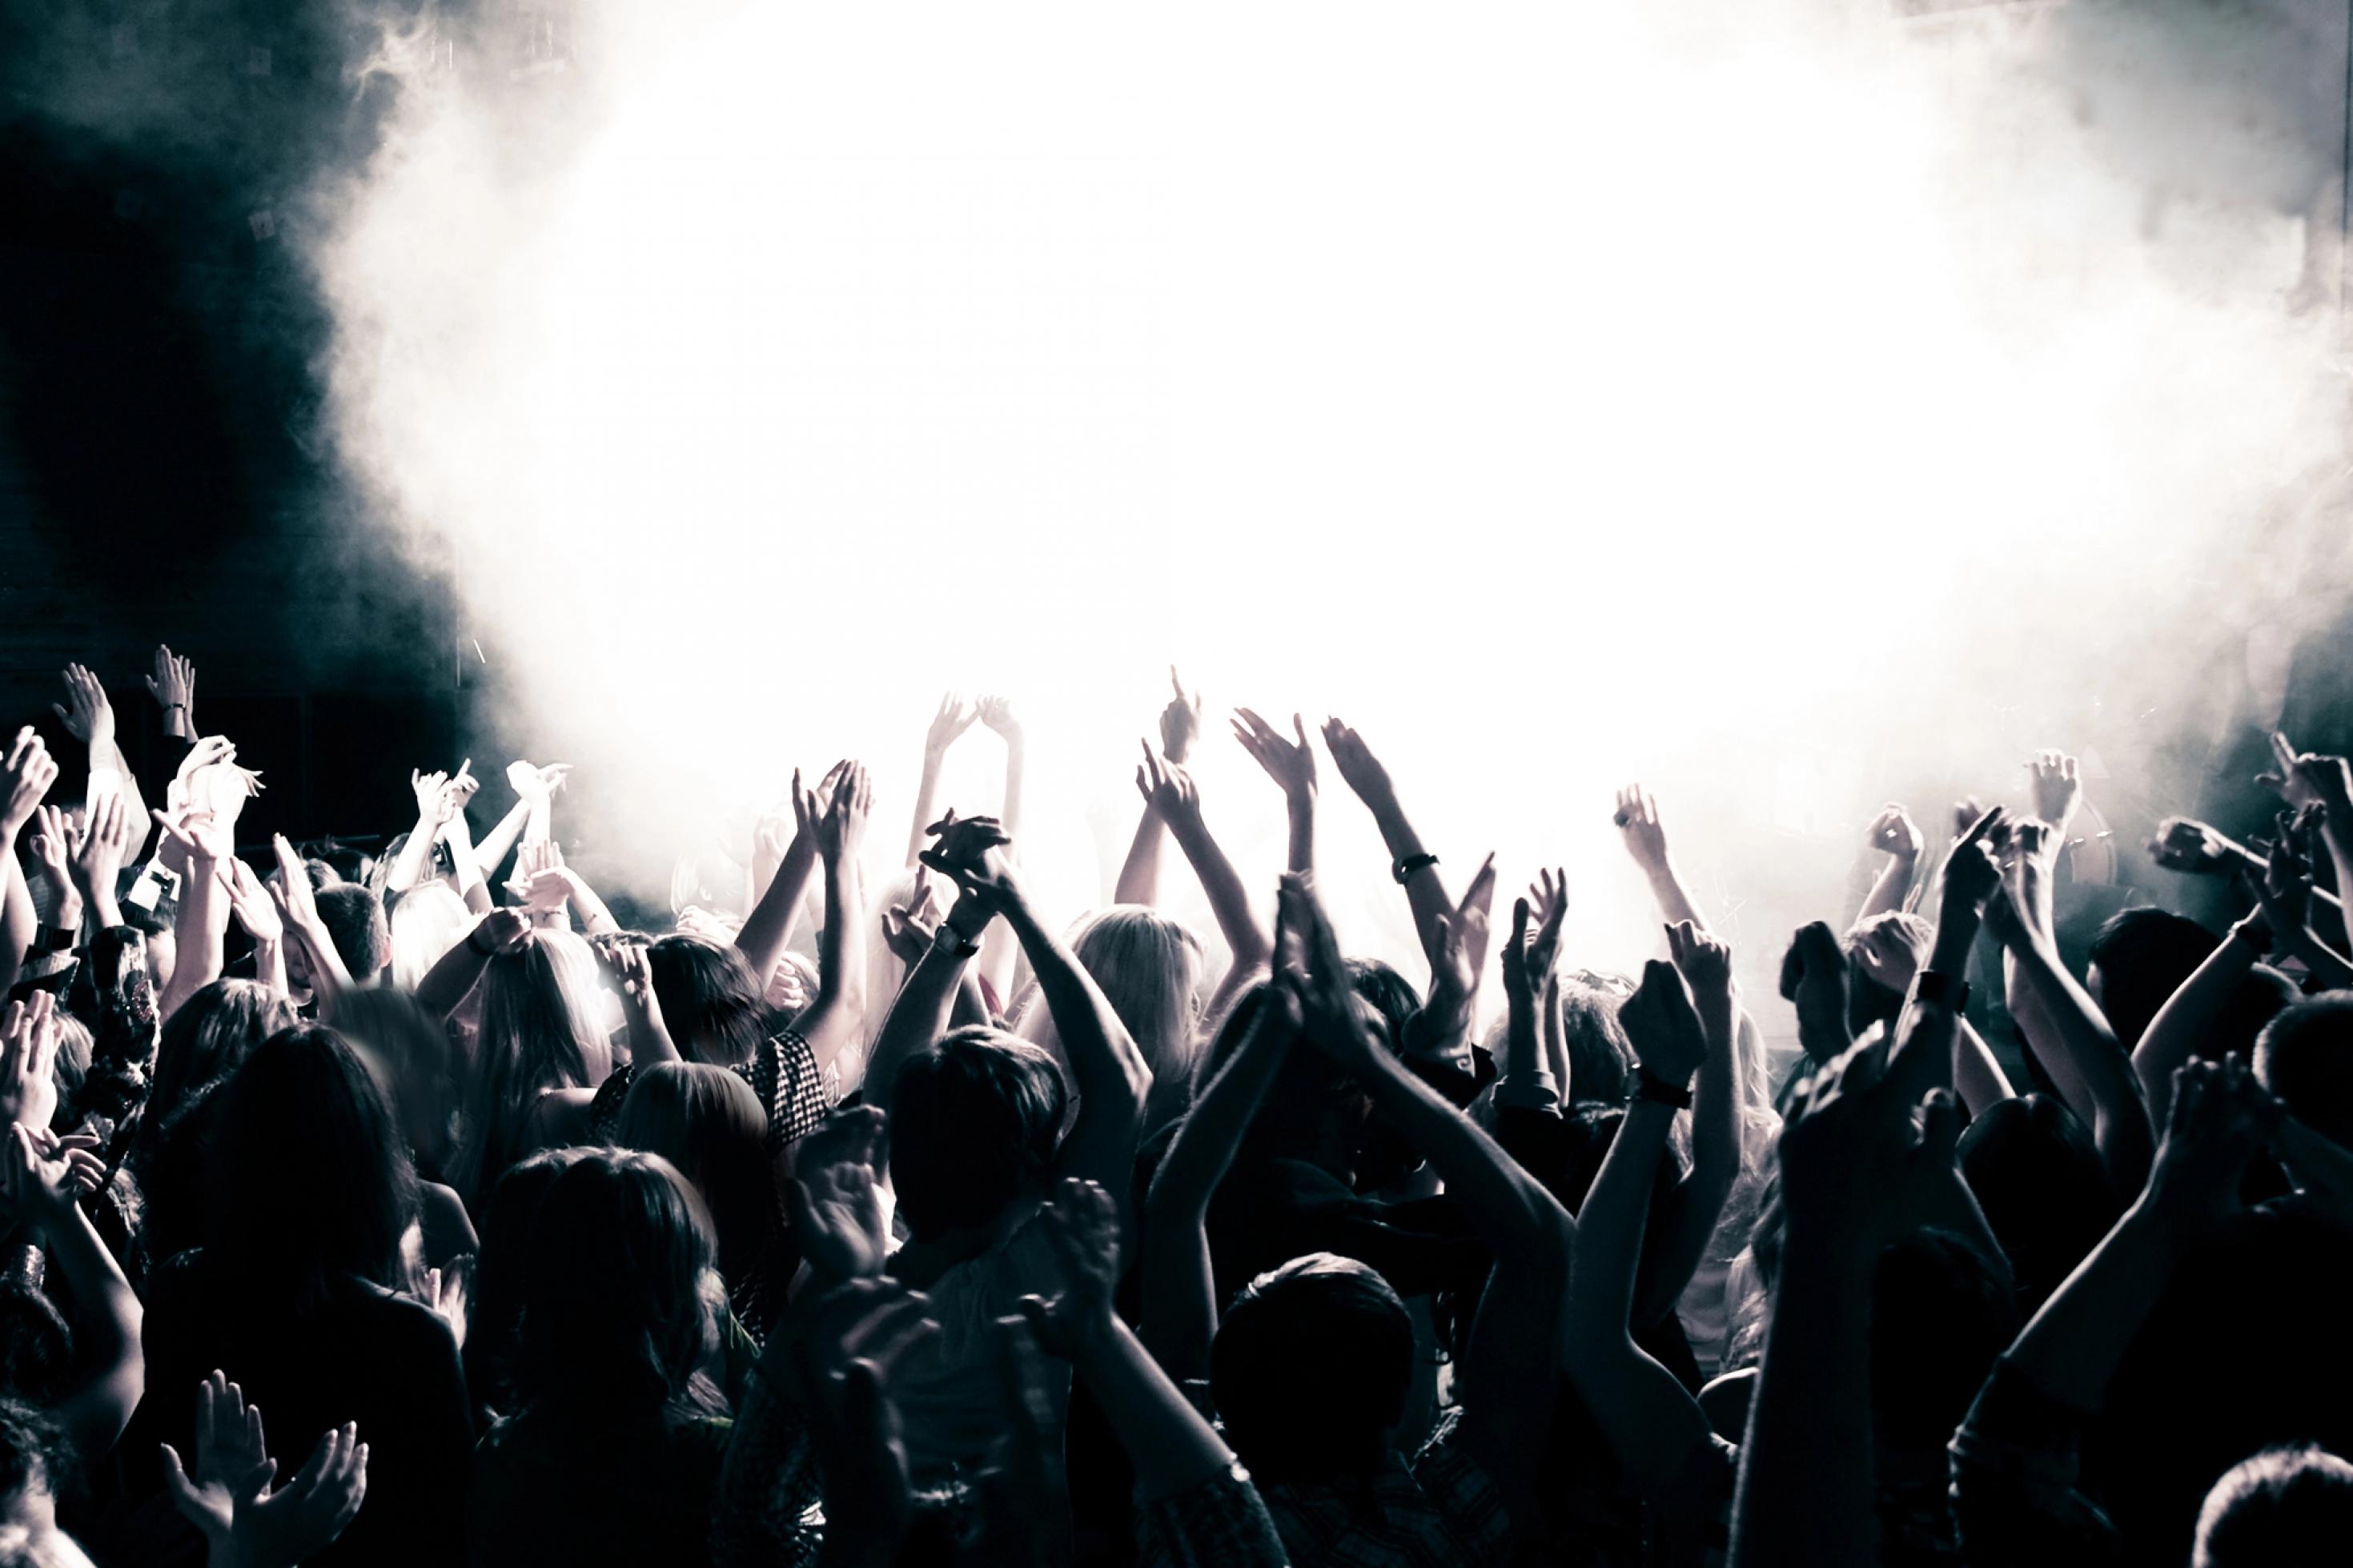 Das Schwarz-Weiß-Foto zeigt die Silhouetten eine Menge junger Menschen, die während einer Musikveranstaltung in einem Saal enthusiastisch tanzen und die Arme hochrecken – im Hintergrund eine gleißend helle, von Scheinwerfern angeleuchtete Nebelblase.